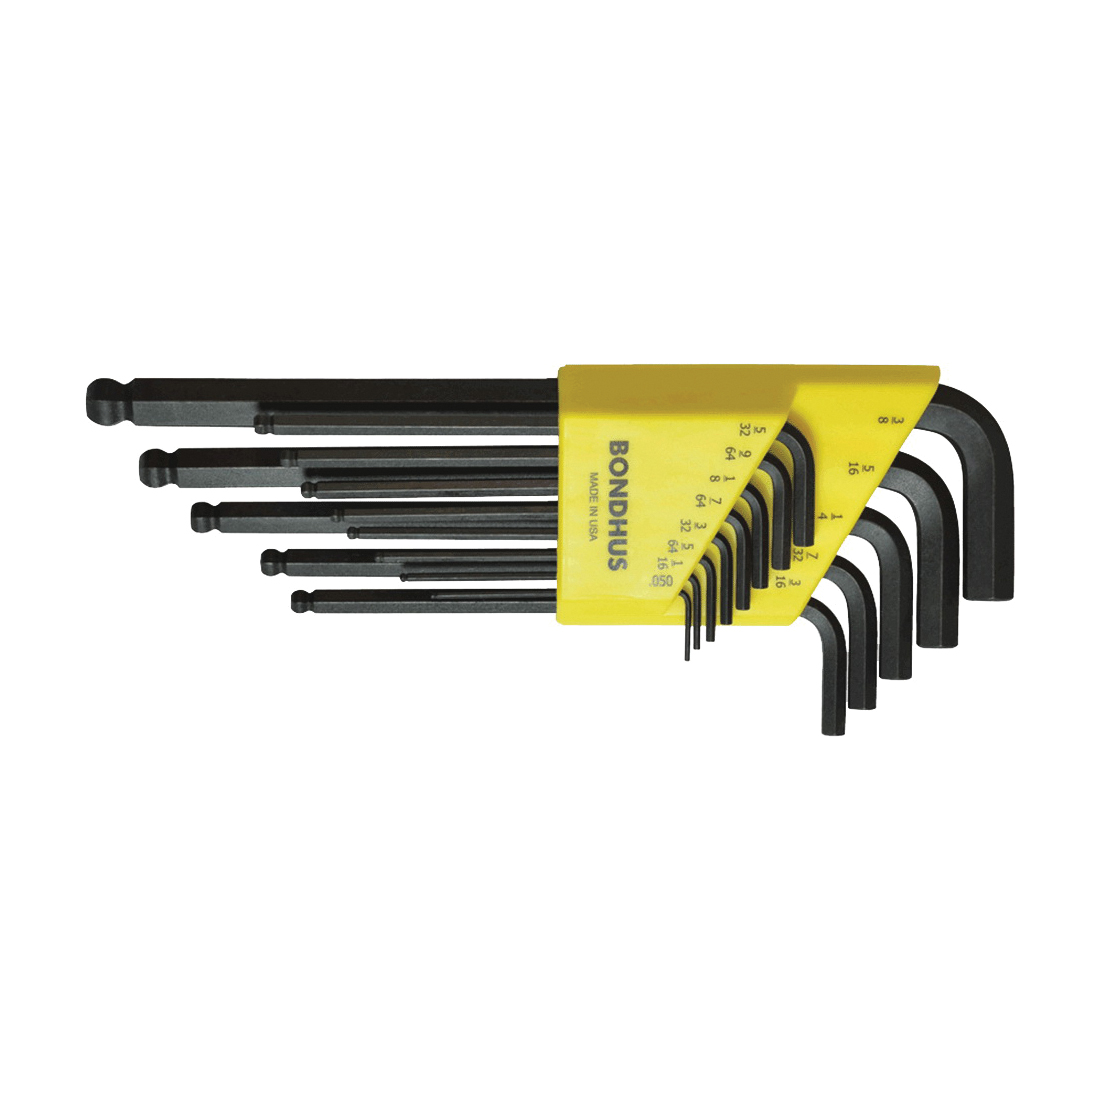 Bondhus 10936 Long Hex Wrench Set, System of Measurement: Imperial, L Key, Protanium® Steel, ProGuard™, 12-Piece